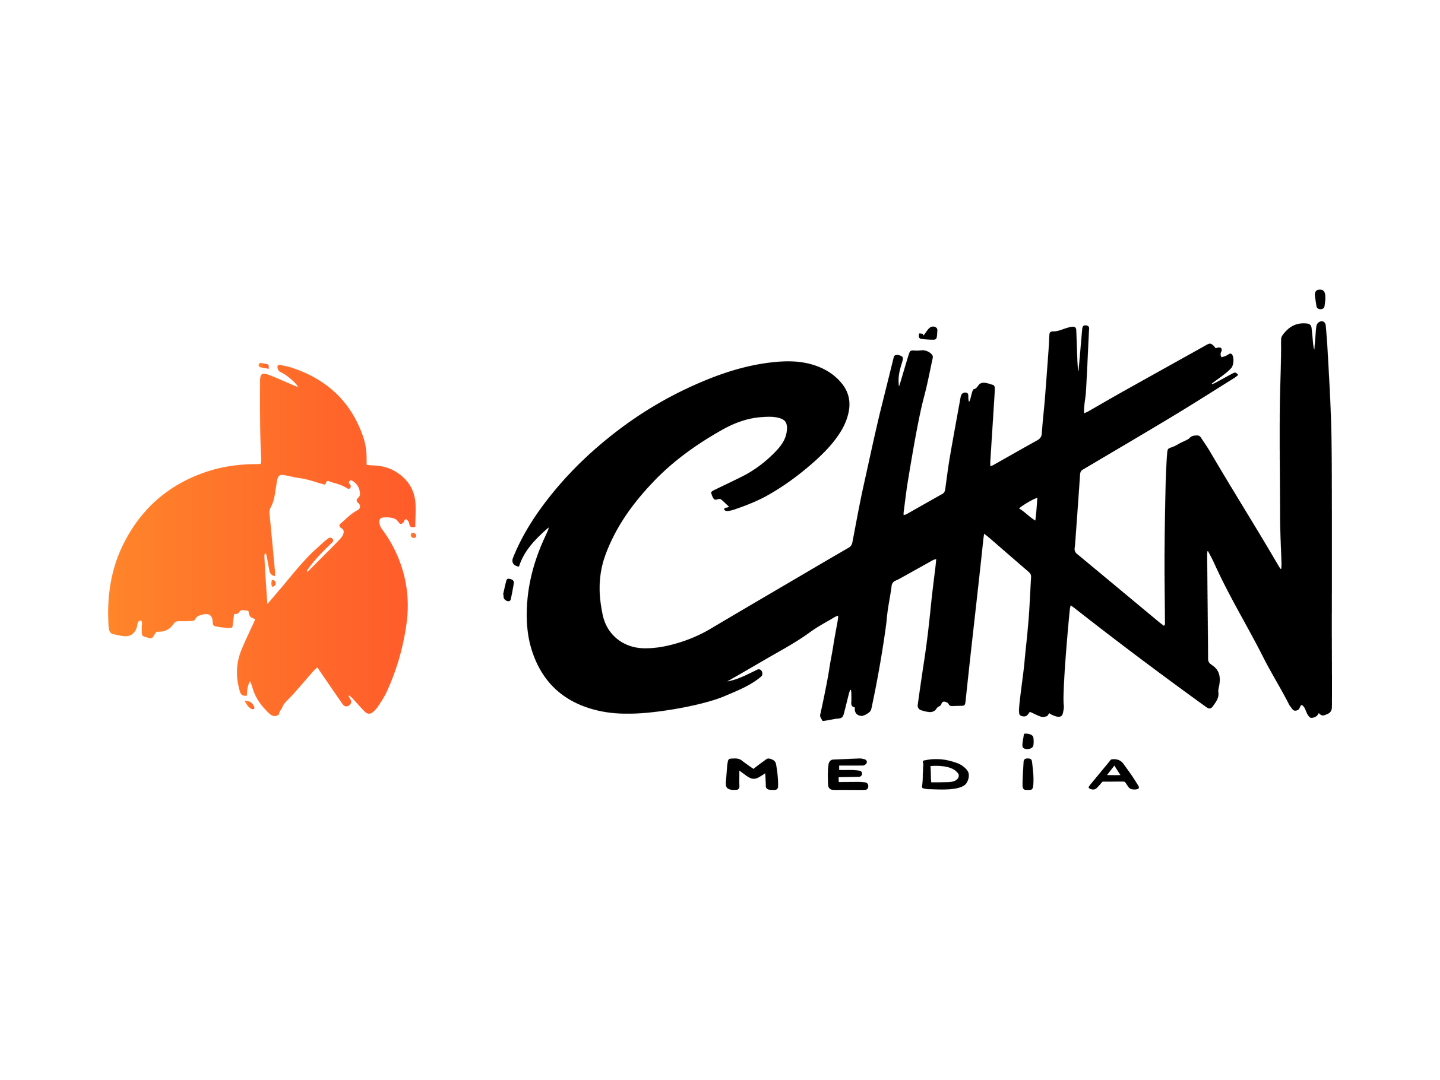 Chkn Media